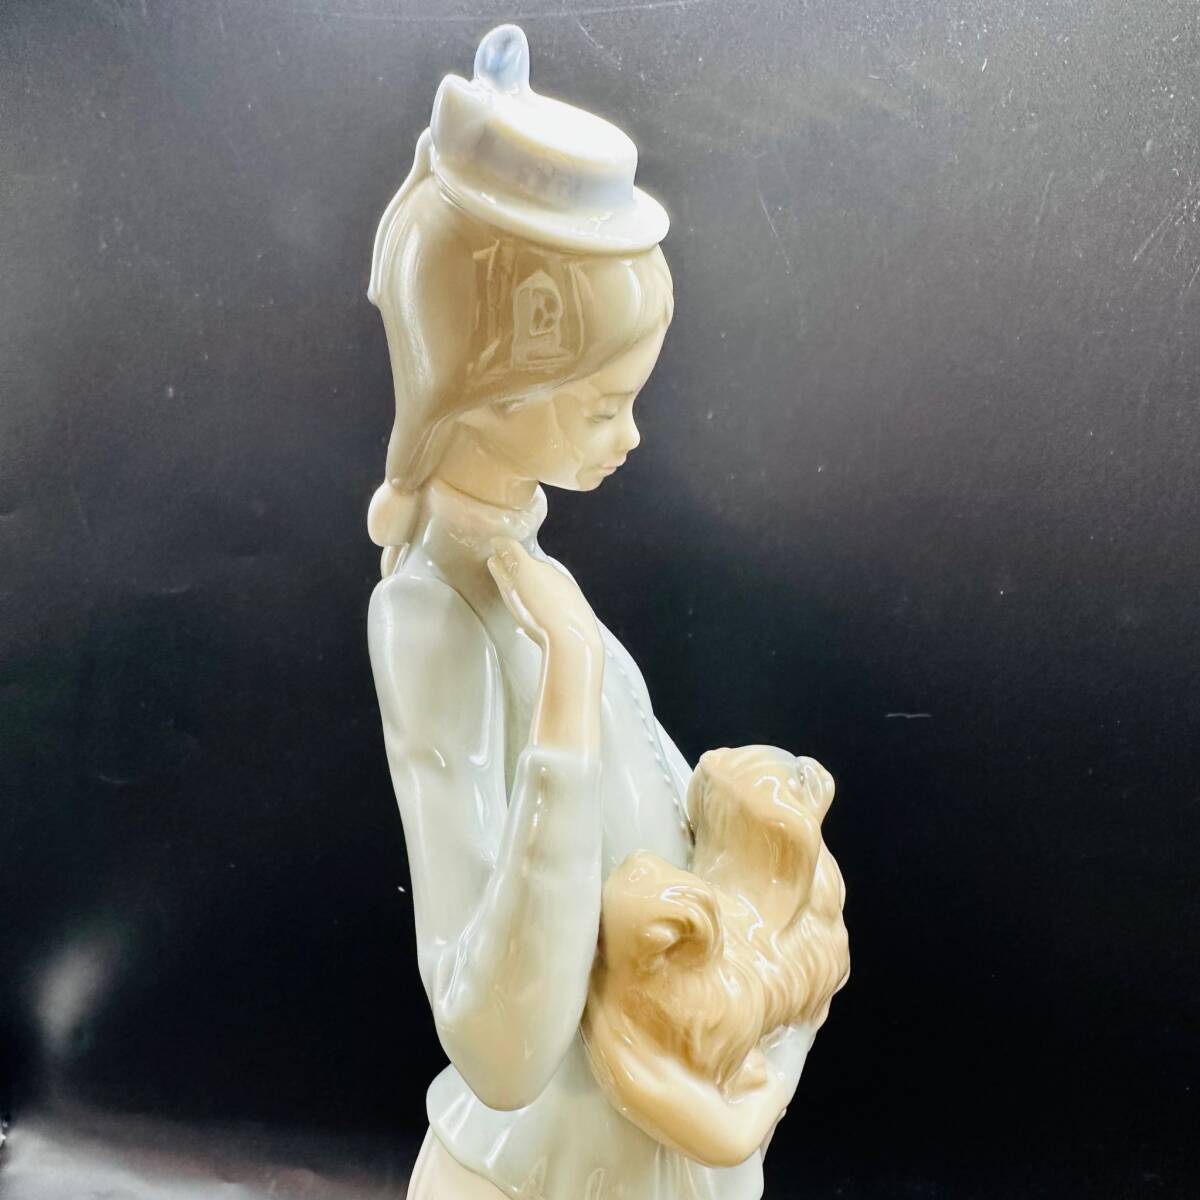  Lladro собака .... женщина figyu Lynn керамика кукла украшение собака зонт высота : примерно 13cm LLADRO ручная работа Испания 1 иен лот текущее состояние товар Vintage 